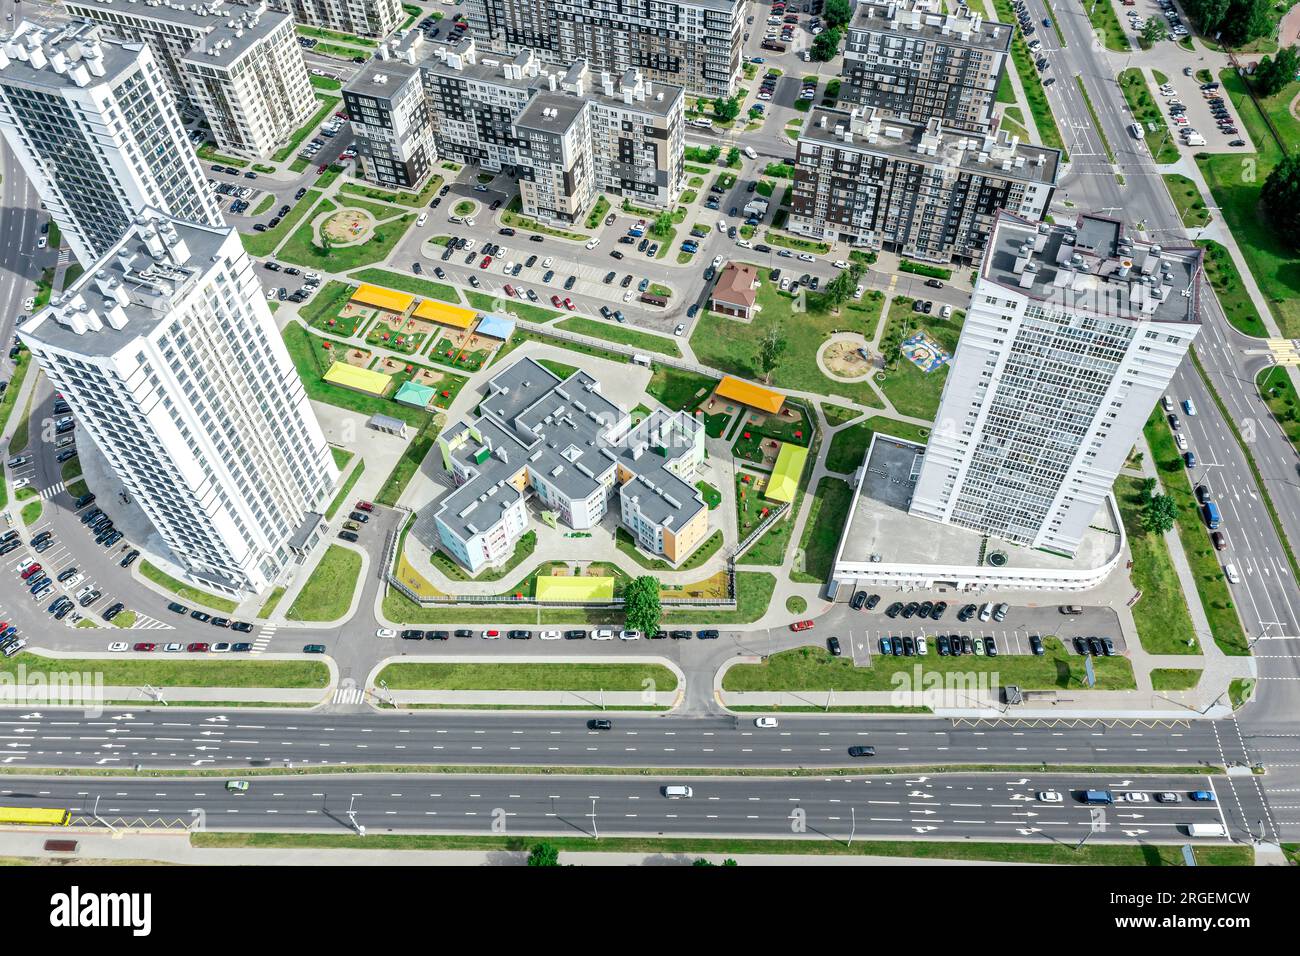 zona residenziale cittadina con strade, case, cortili con parchi giochi e parcheggi. foto aerea. Foto Stock